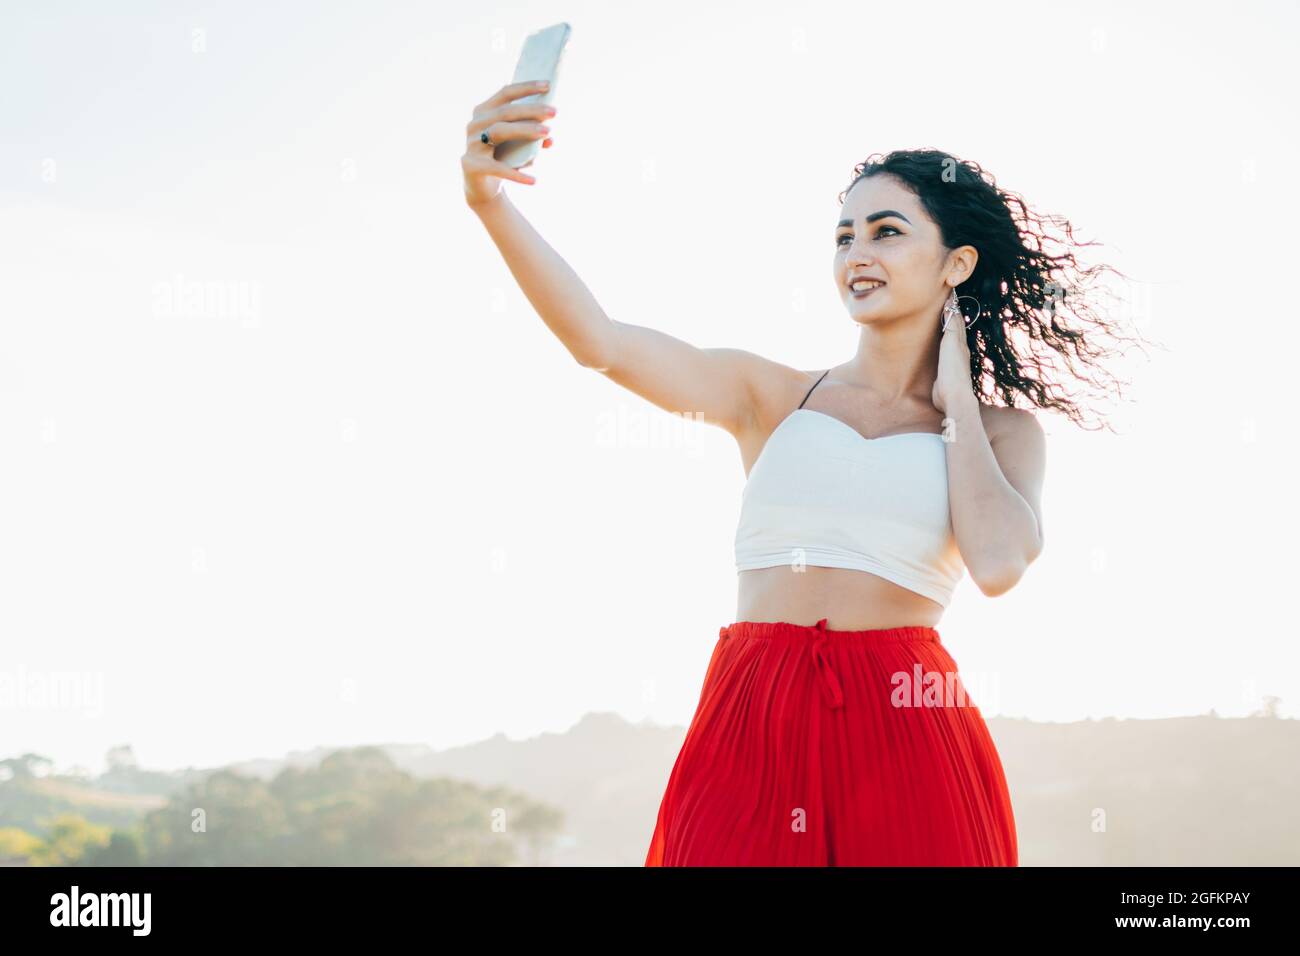 Ein ehrliches Porträt einer stilvollen jungen Frau, die ein Selfie mit dem Mobiltelefon macht und für soziale Medien in einem Park im Freien posiert. Stockfoto